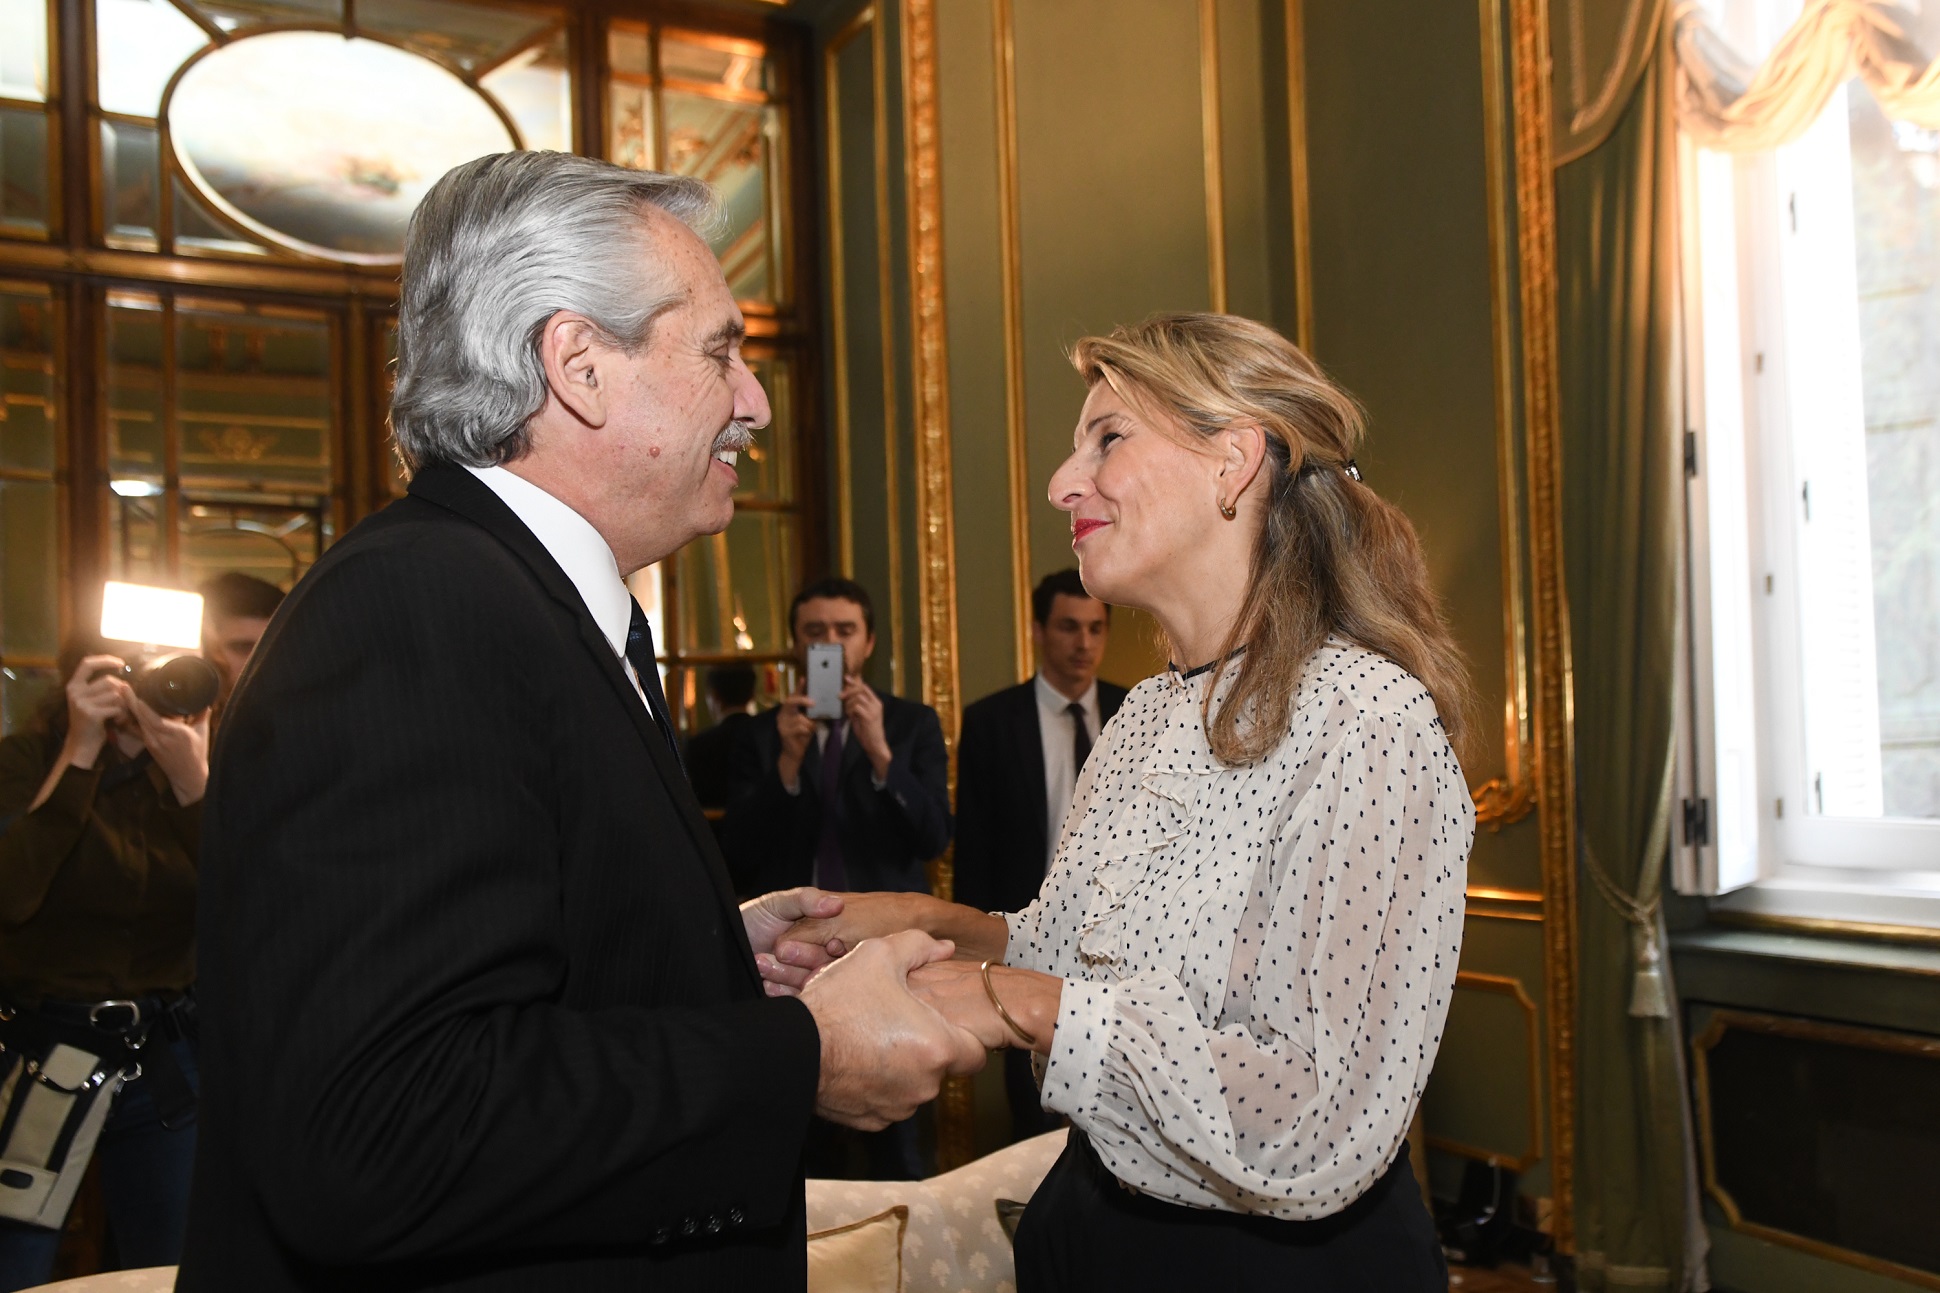 El presidente se reunió con la vicepresidenta de España Yolanda Díaz